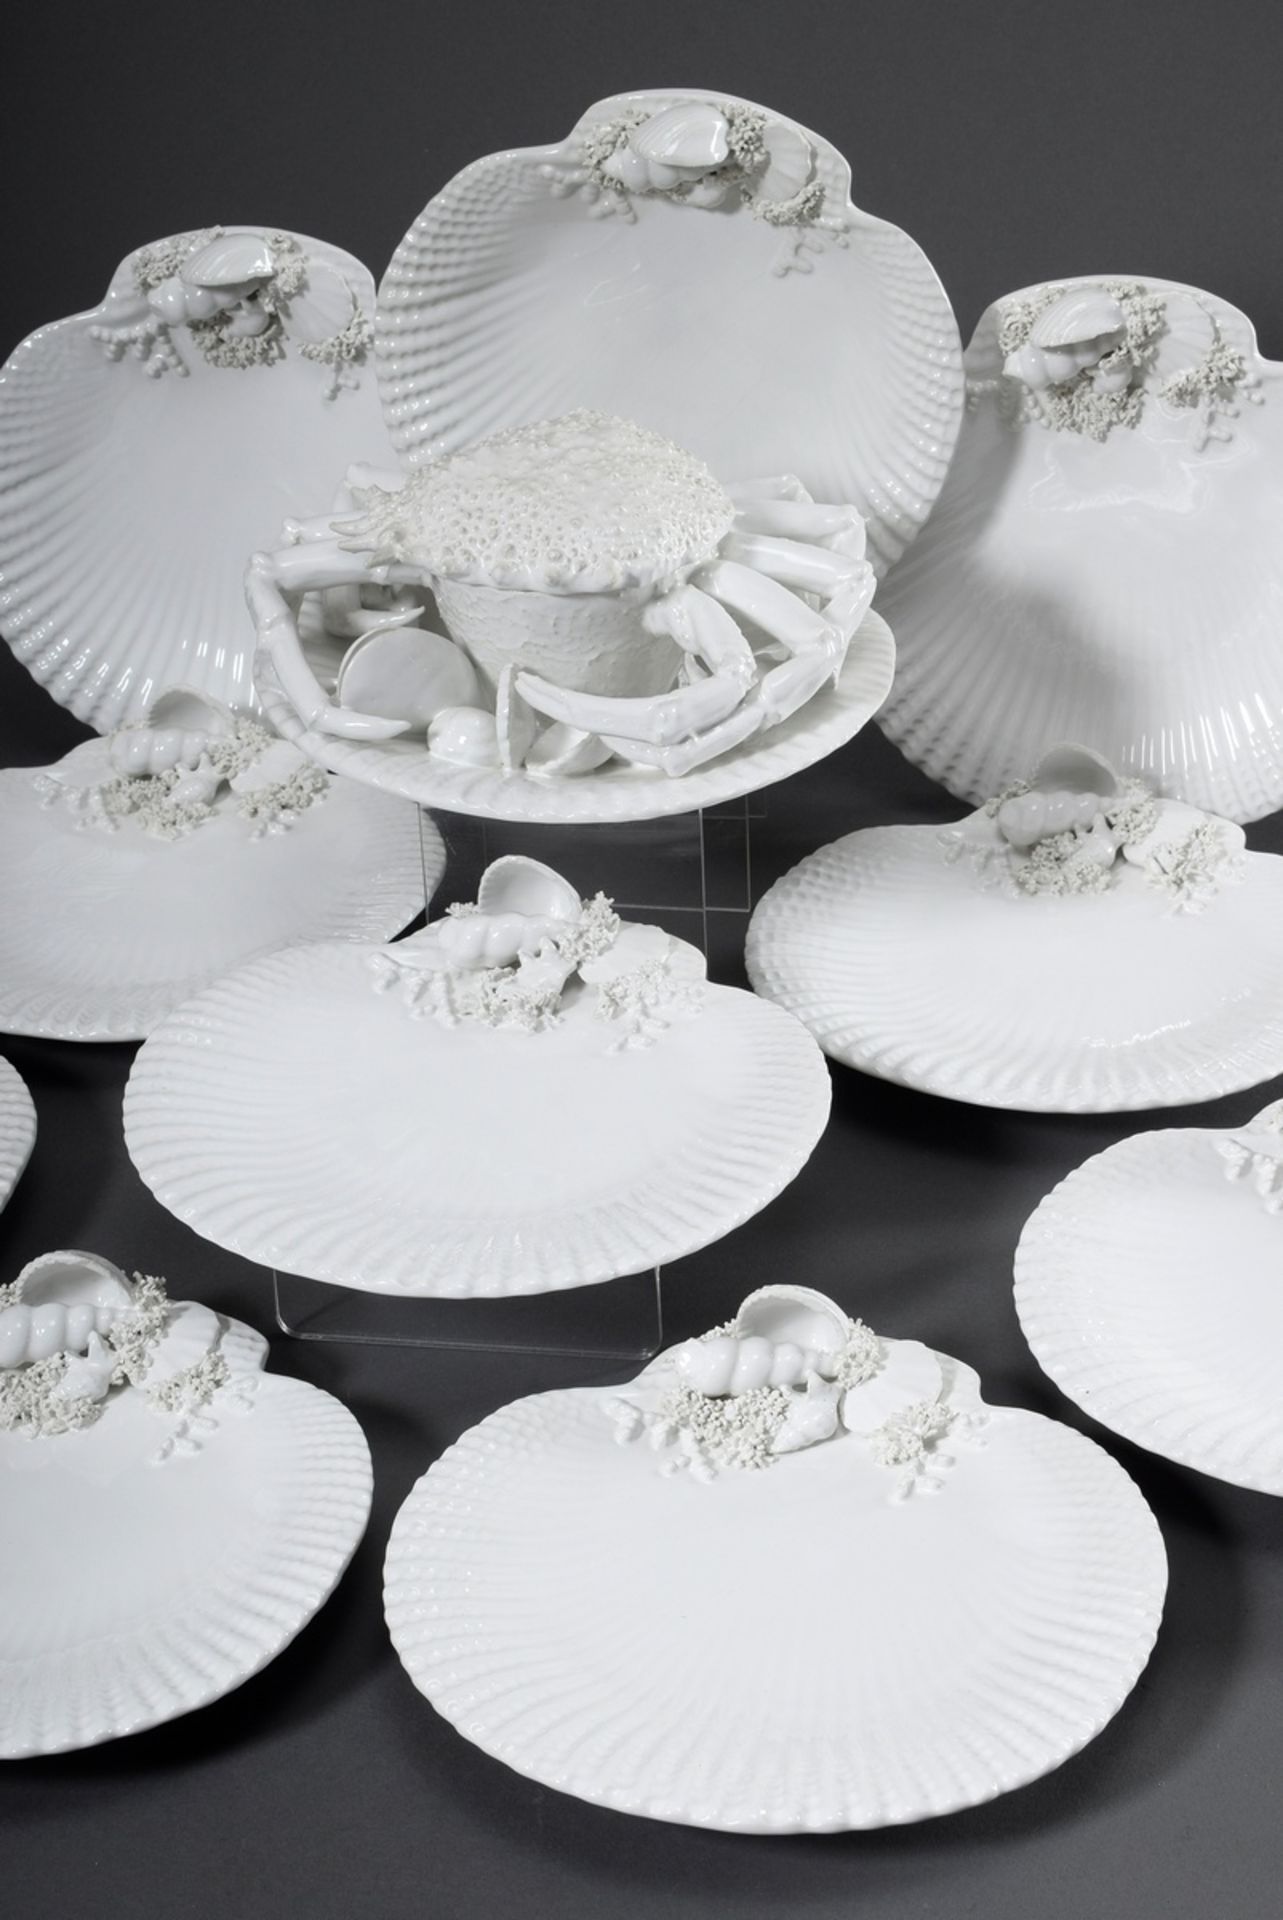 11 Teile weißes Keramik Service mit plastischem "Frutti di Mare" Dekor, bez. V.